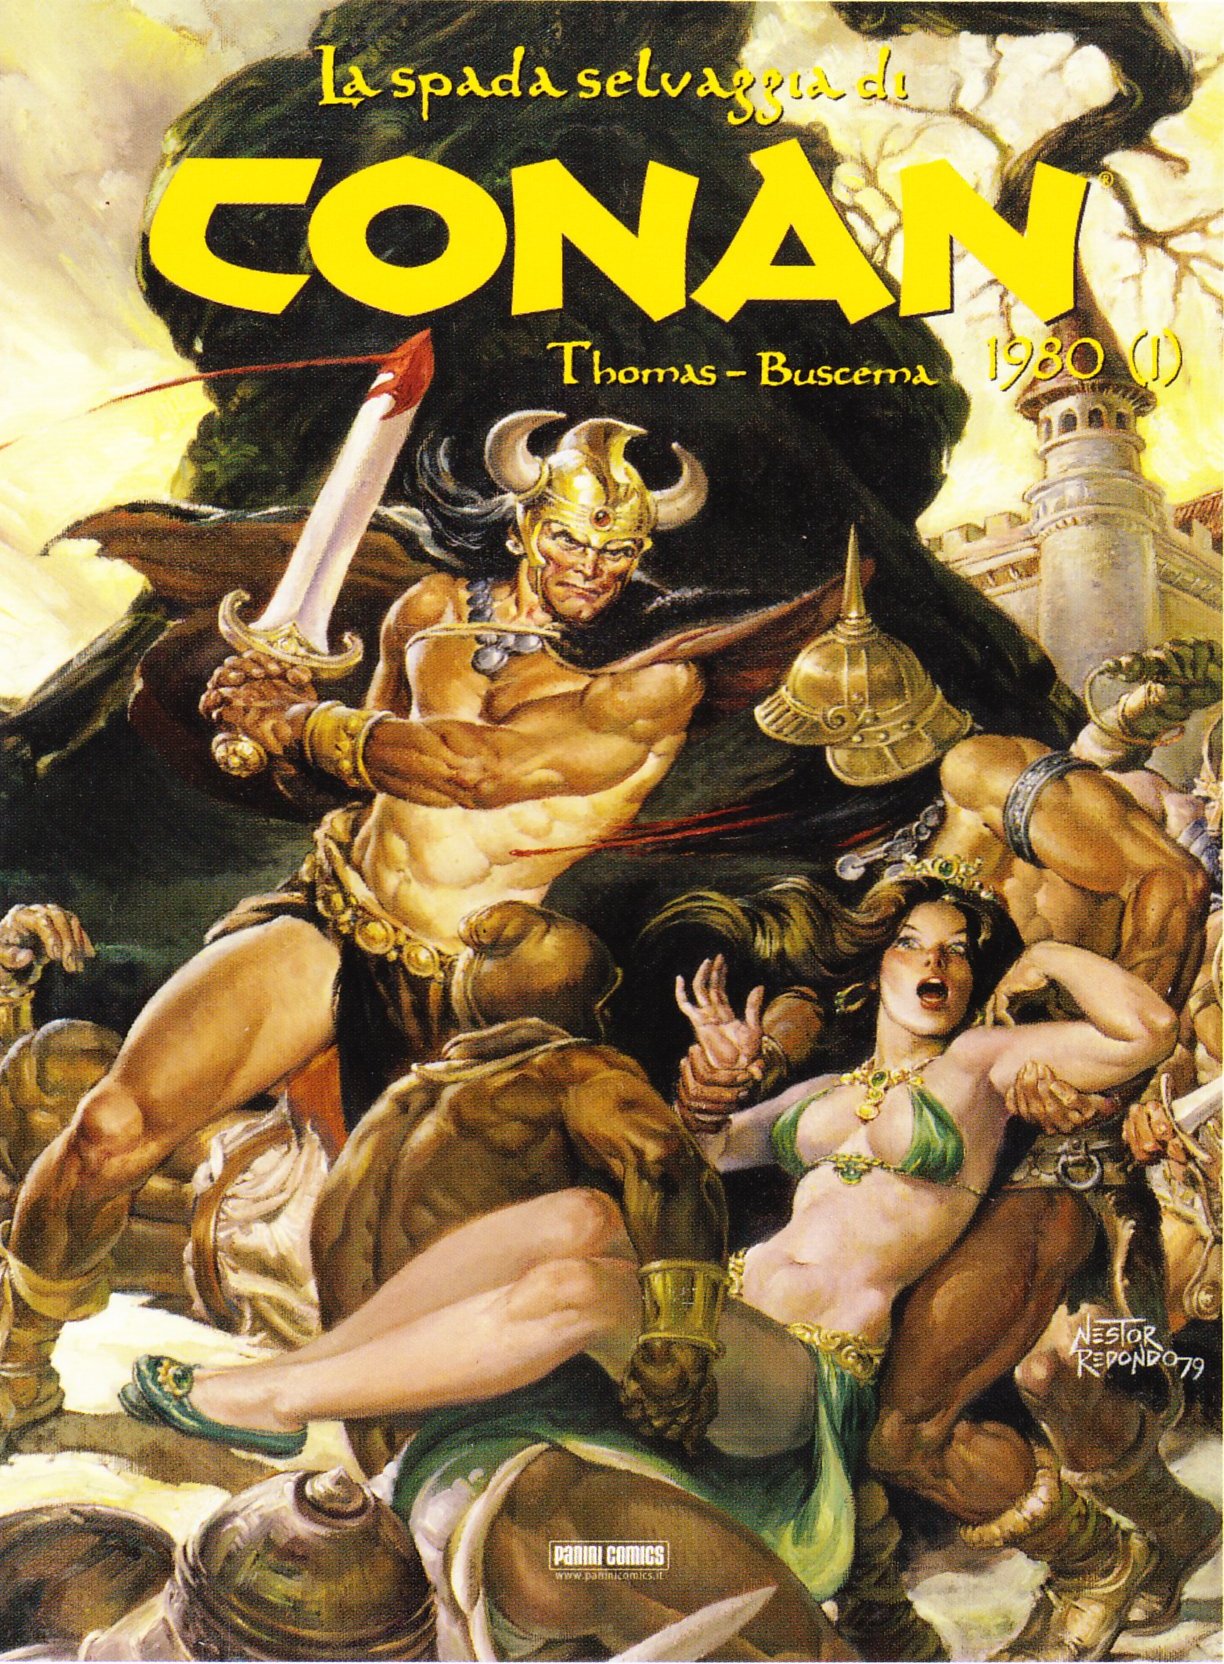 La spada selvaggia di Conan: 1980 (I)